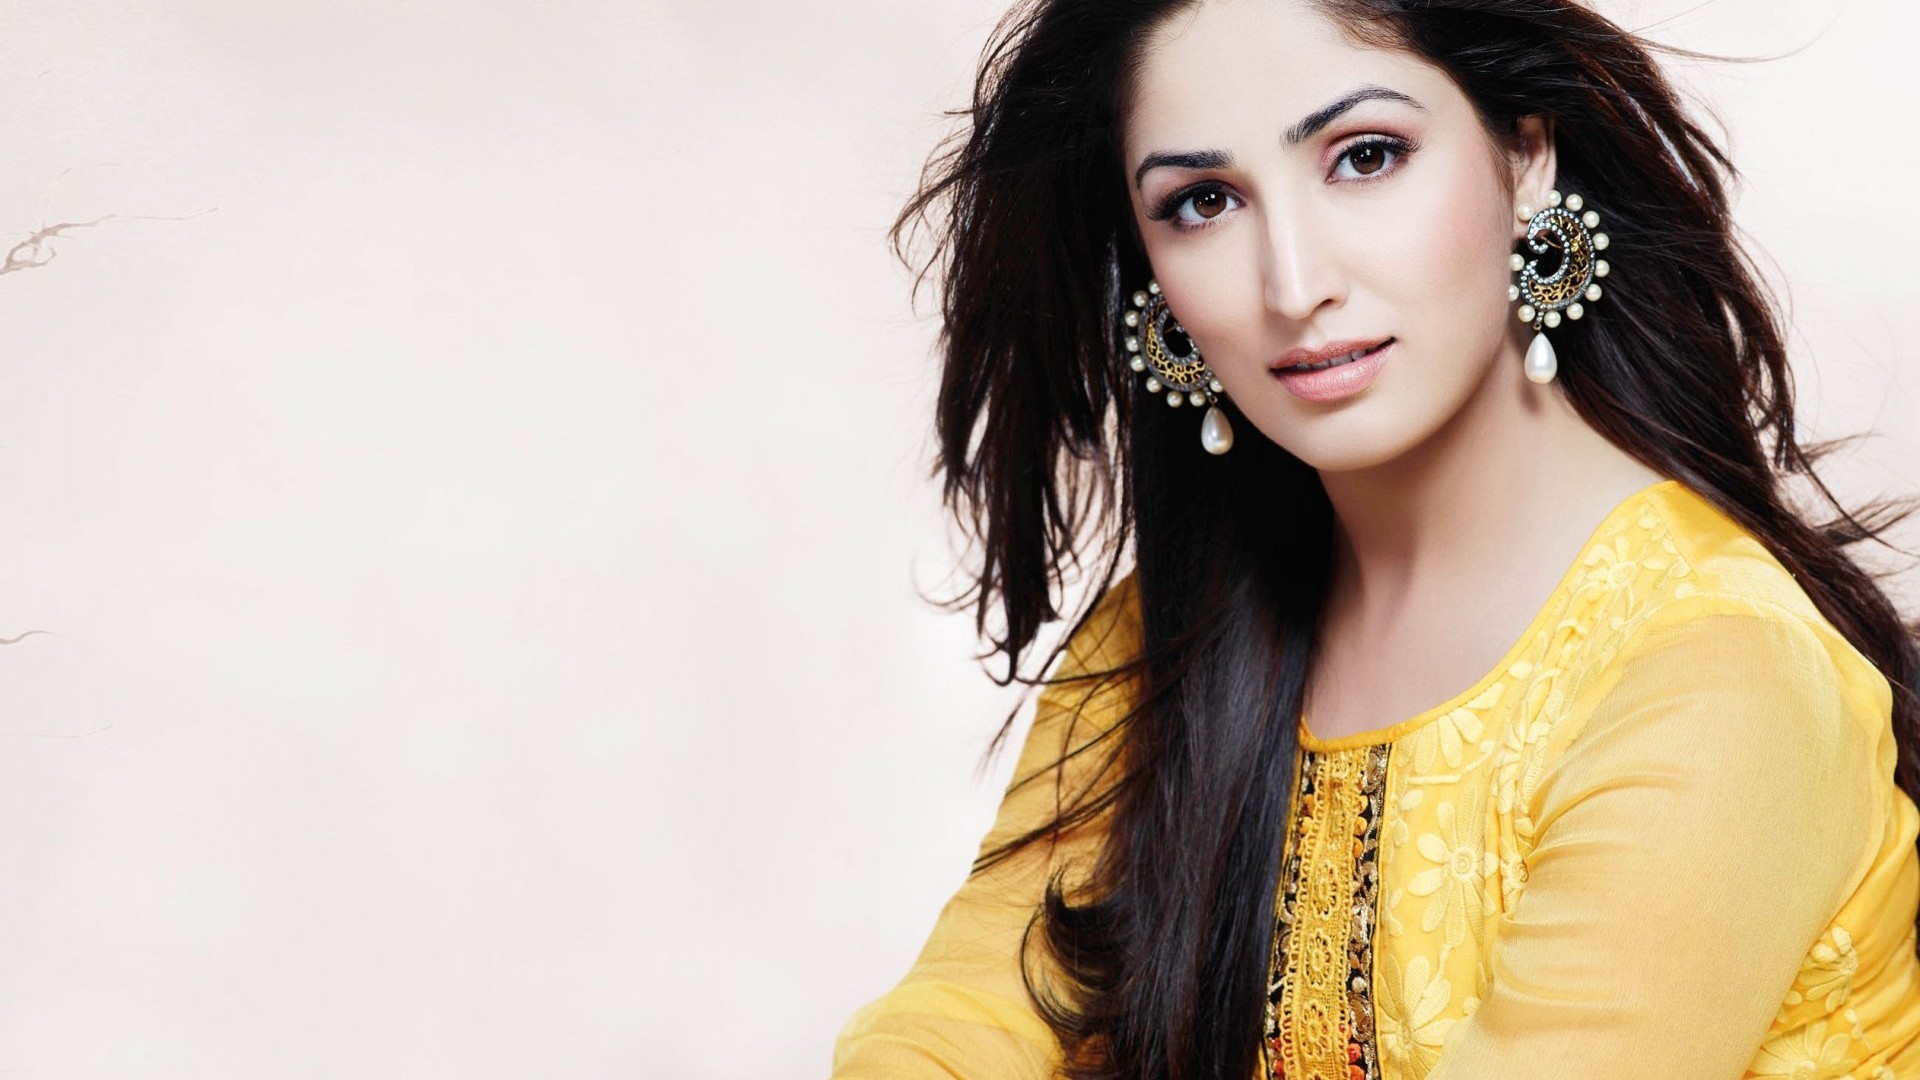 Full HD Wallpapers Bollywood Actress ·① WallpaperTag